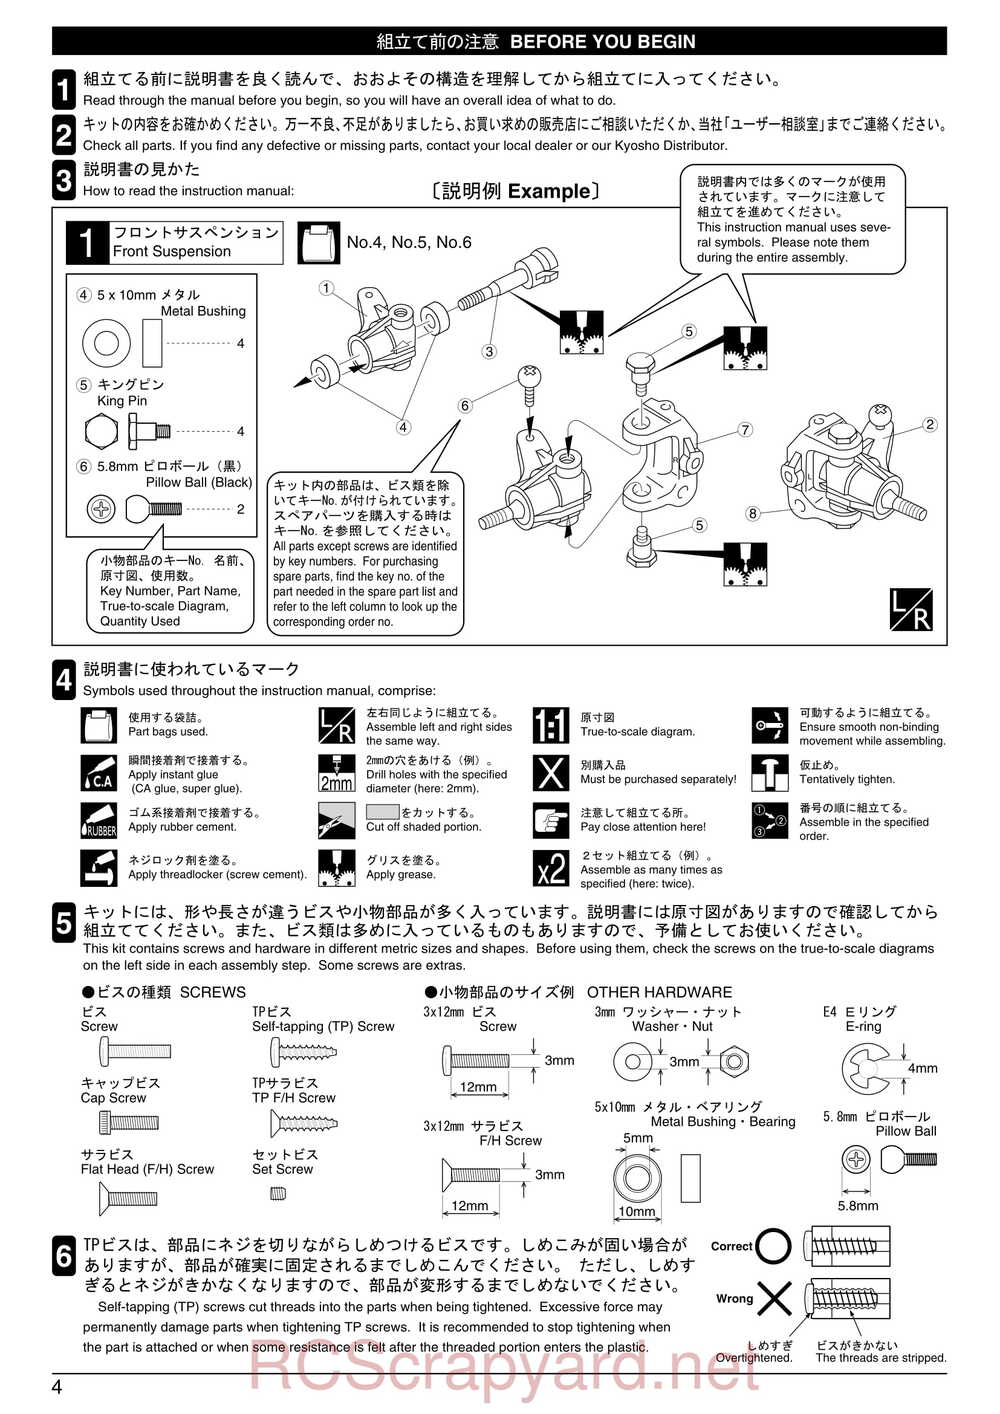 Kyosho - 31255 - V-One RR Evolution - Manual - Page 04